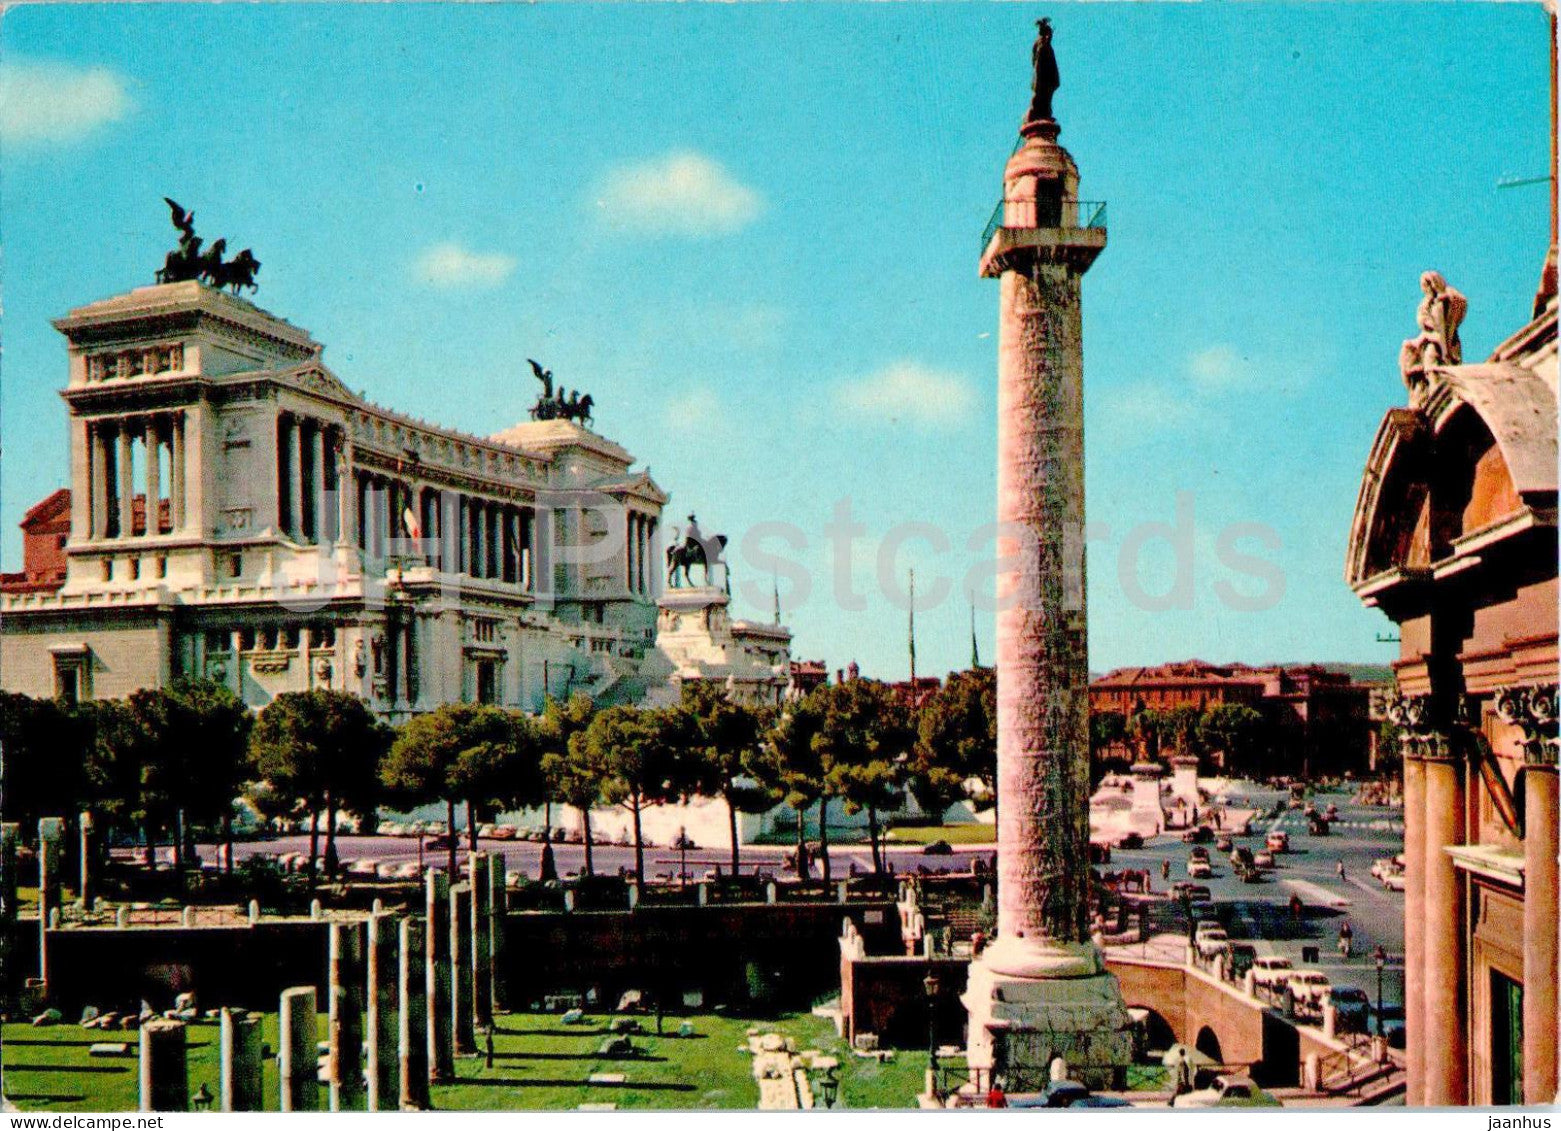 Roma - Rome - Altare della Patria - Altar of the Nation - 233 - 1989 - Italy - used - JH Postcards